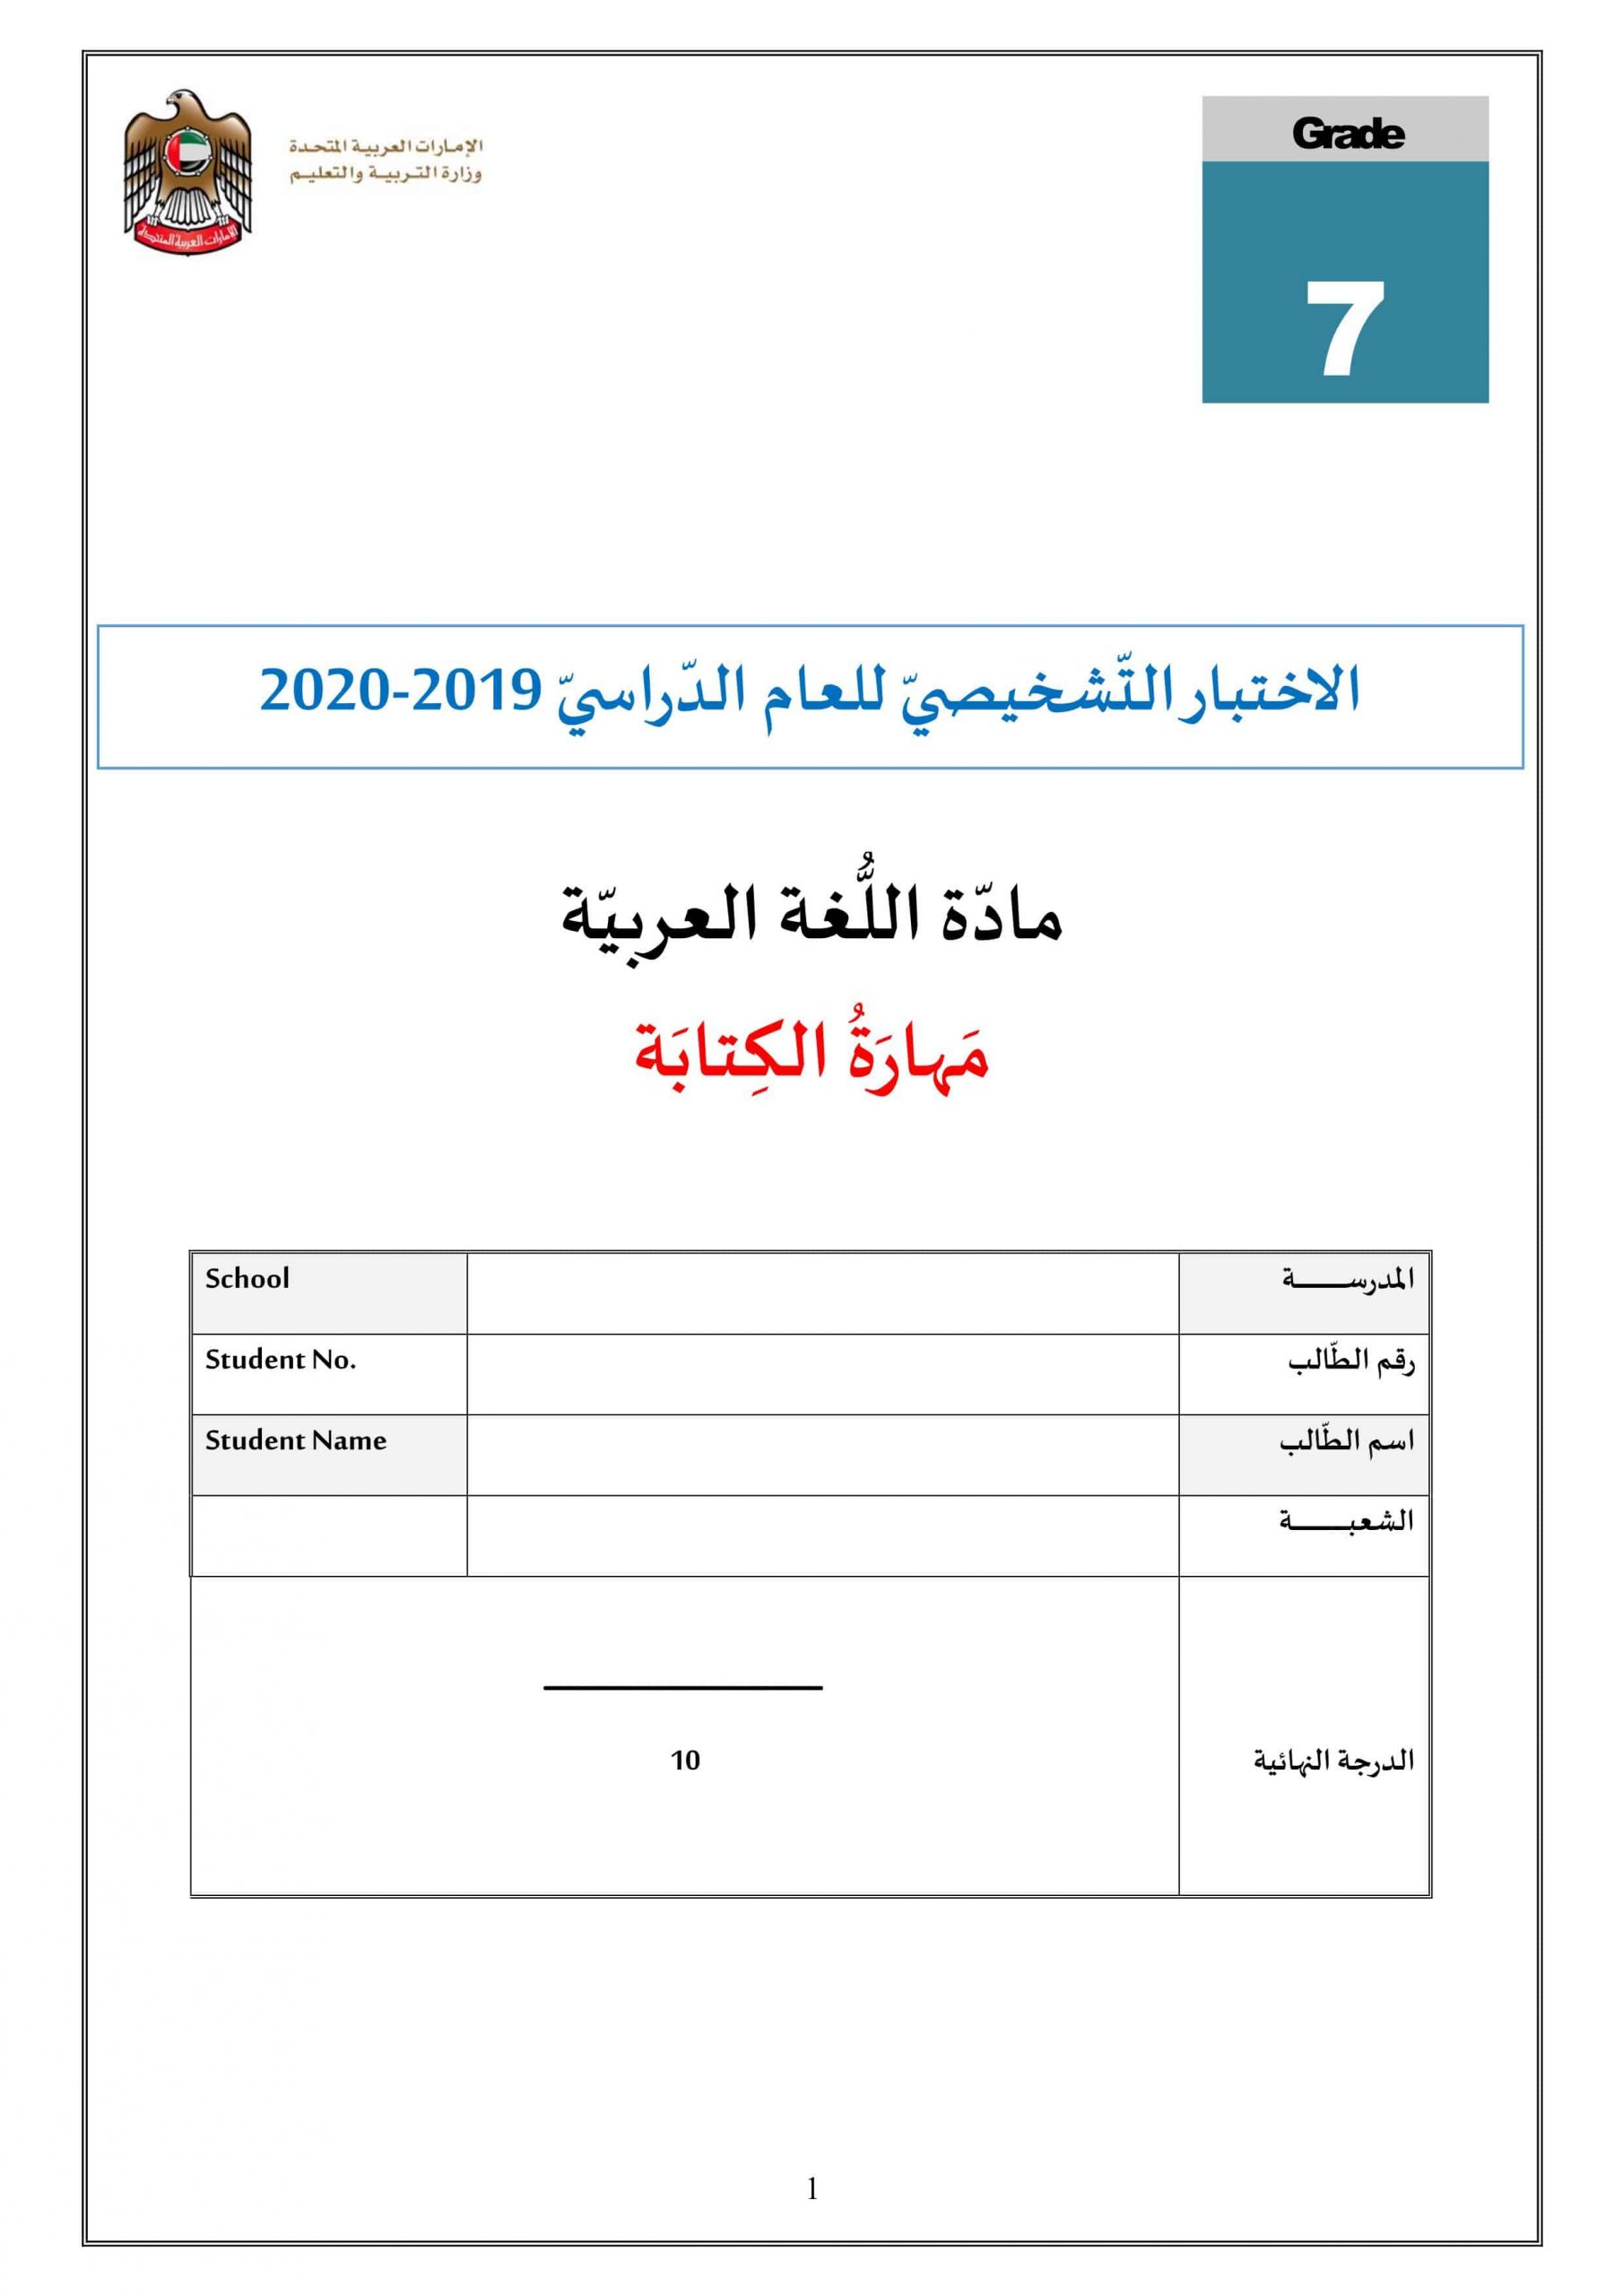 الاختبار التشخيصي مهارة الكتابة 2019-2020 الصف السابع مادة اللغة العربية